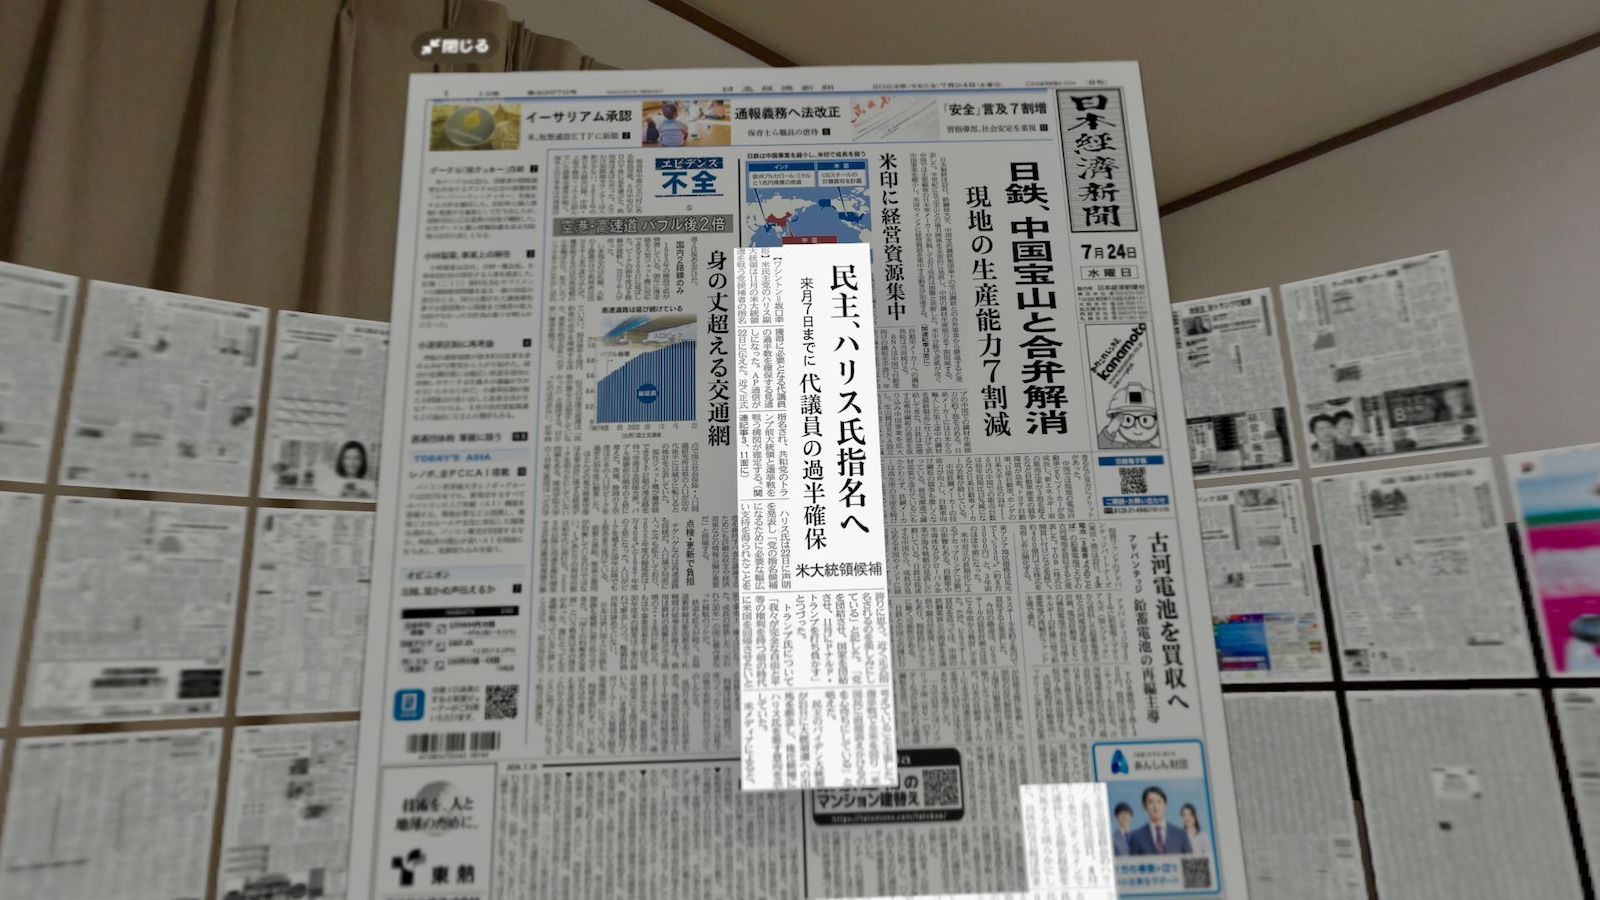 ｢空間で読む新聞｣日経が示した斬新なアイデア Vision Pro用『日経空間版』作者を直撃